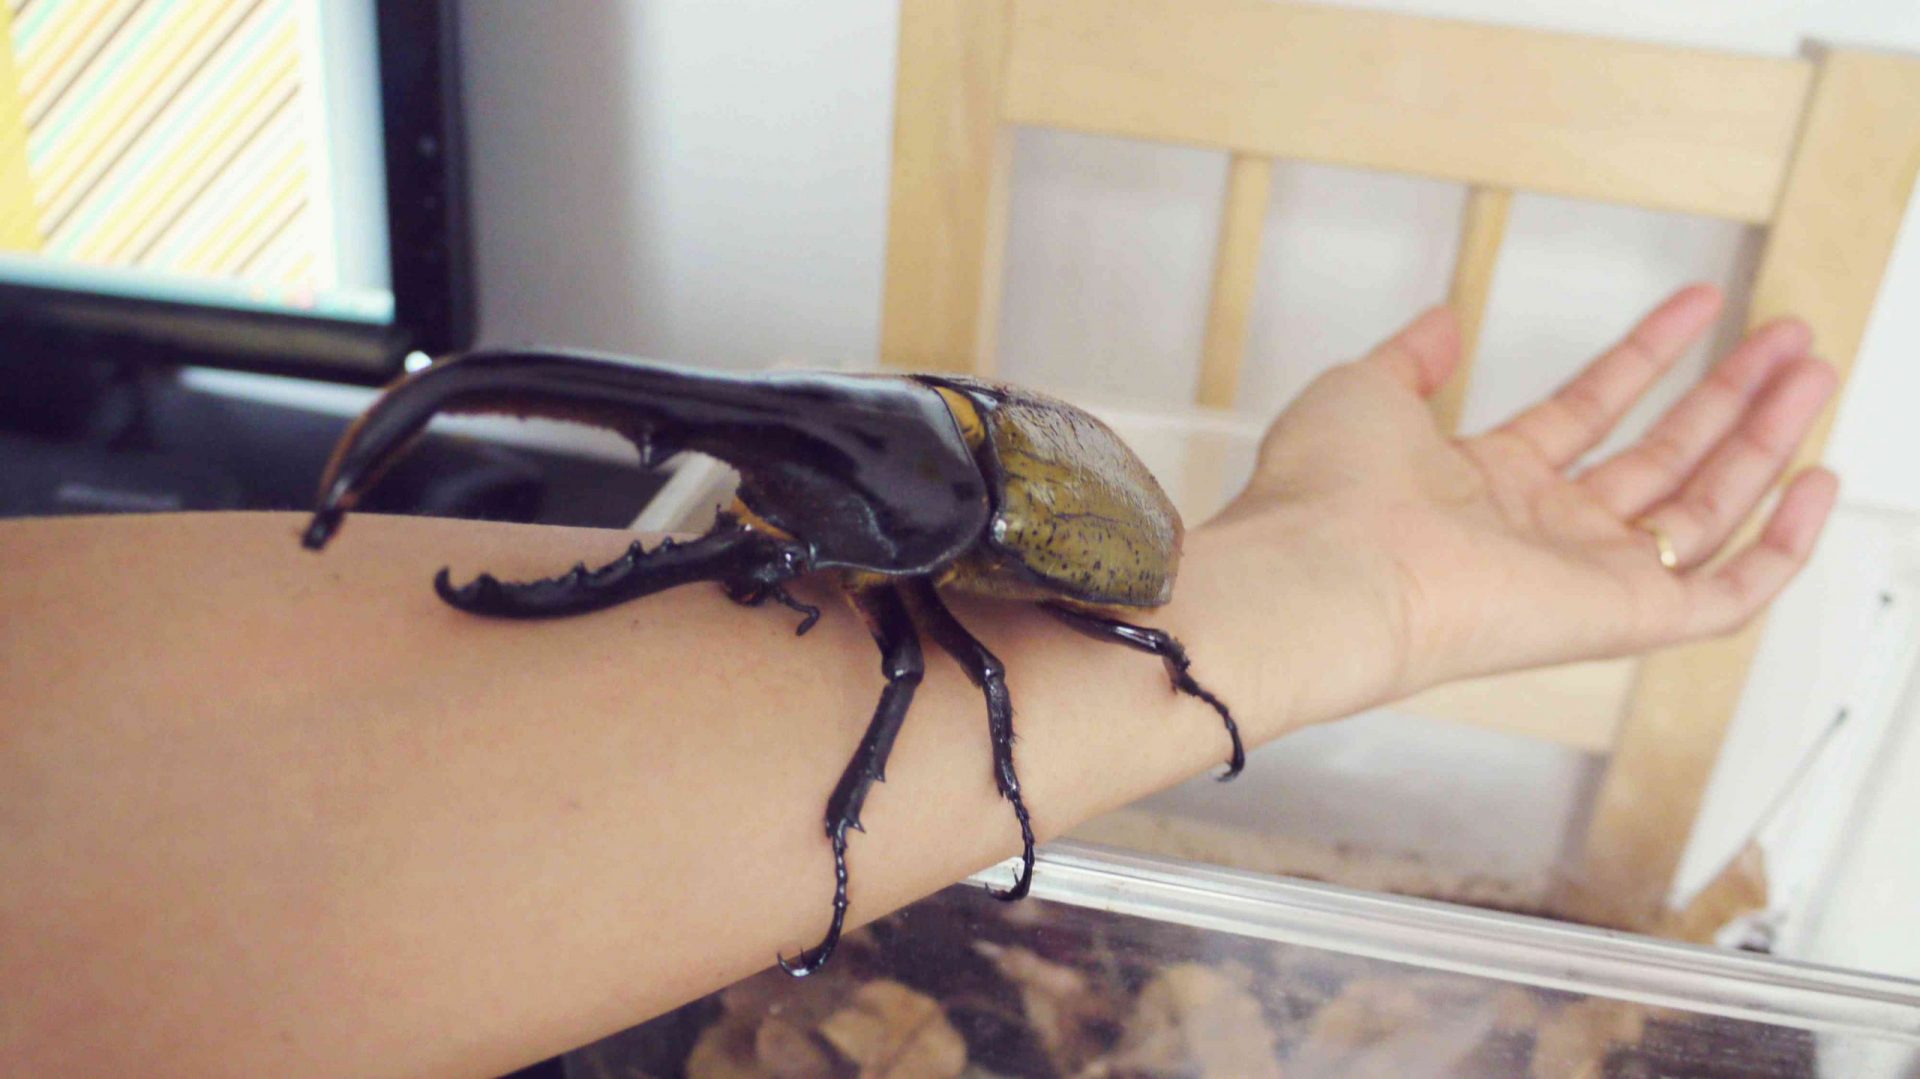 un escarabajo Hércules marrón y negro posado en el brazo de una persona